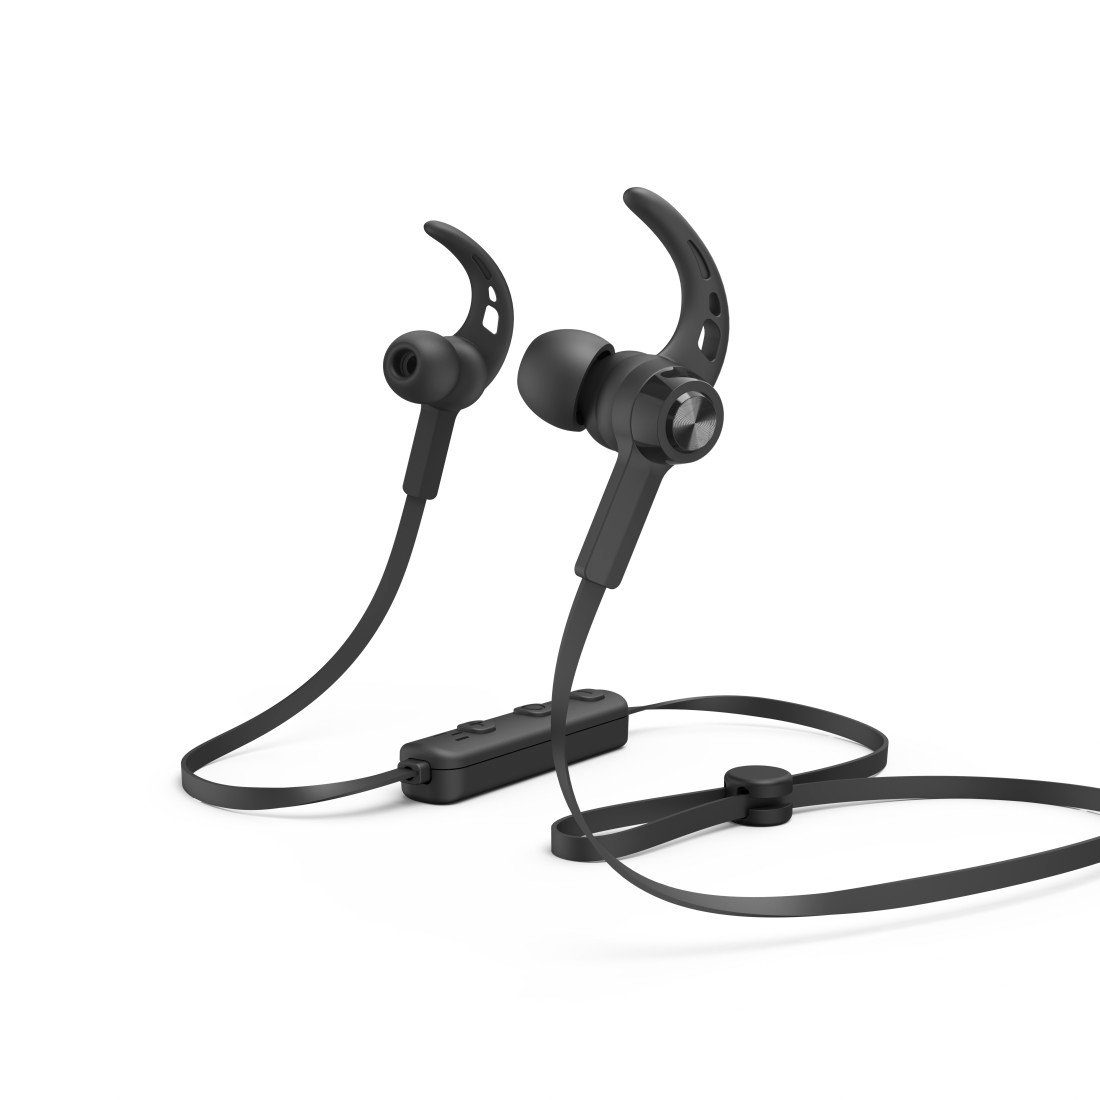 Hama Sport Bluetooth®-Kopfhörer 5.0 Schwarz, Mikrofon, Reichweite 10m Bluetooth-Kopfhörer (Freisprechfunktion, Sprachsteuerung, Google Assistant, Siri, A2DP Bluetooth, AVRCP Bluetooth, HFP, In Ear, Sprachassistenten, Lautstärkeregler und Rufannahmetaste)